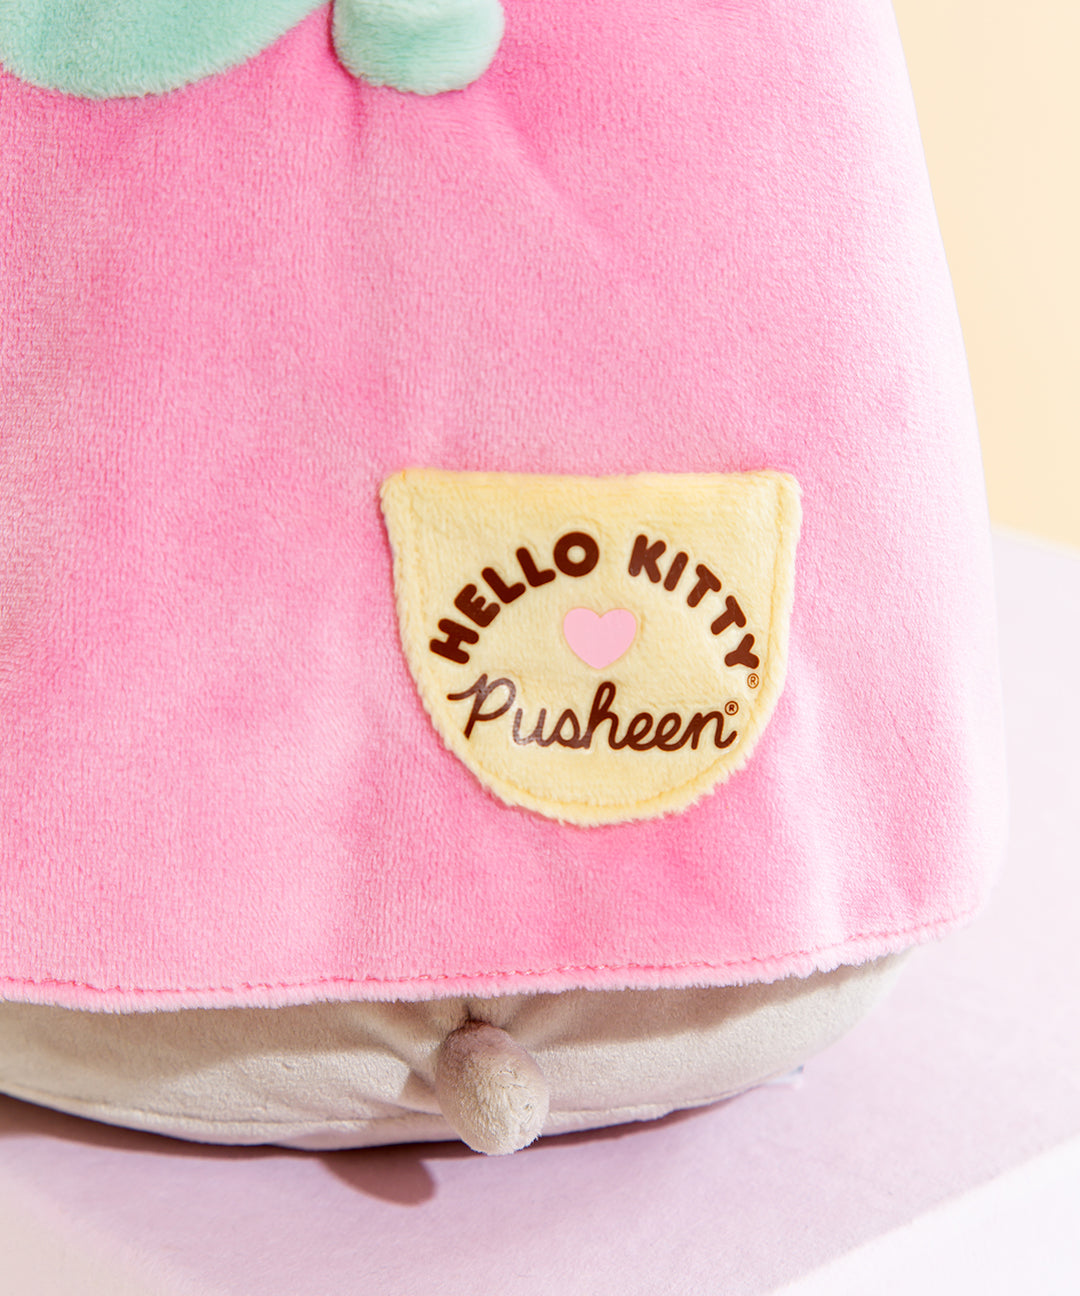 Hello Kitty® x Pusheen® Pusheen Costume Plush – Pusheen Shop